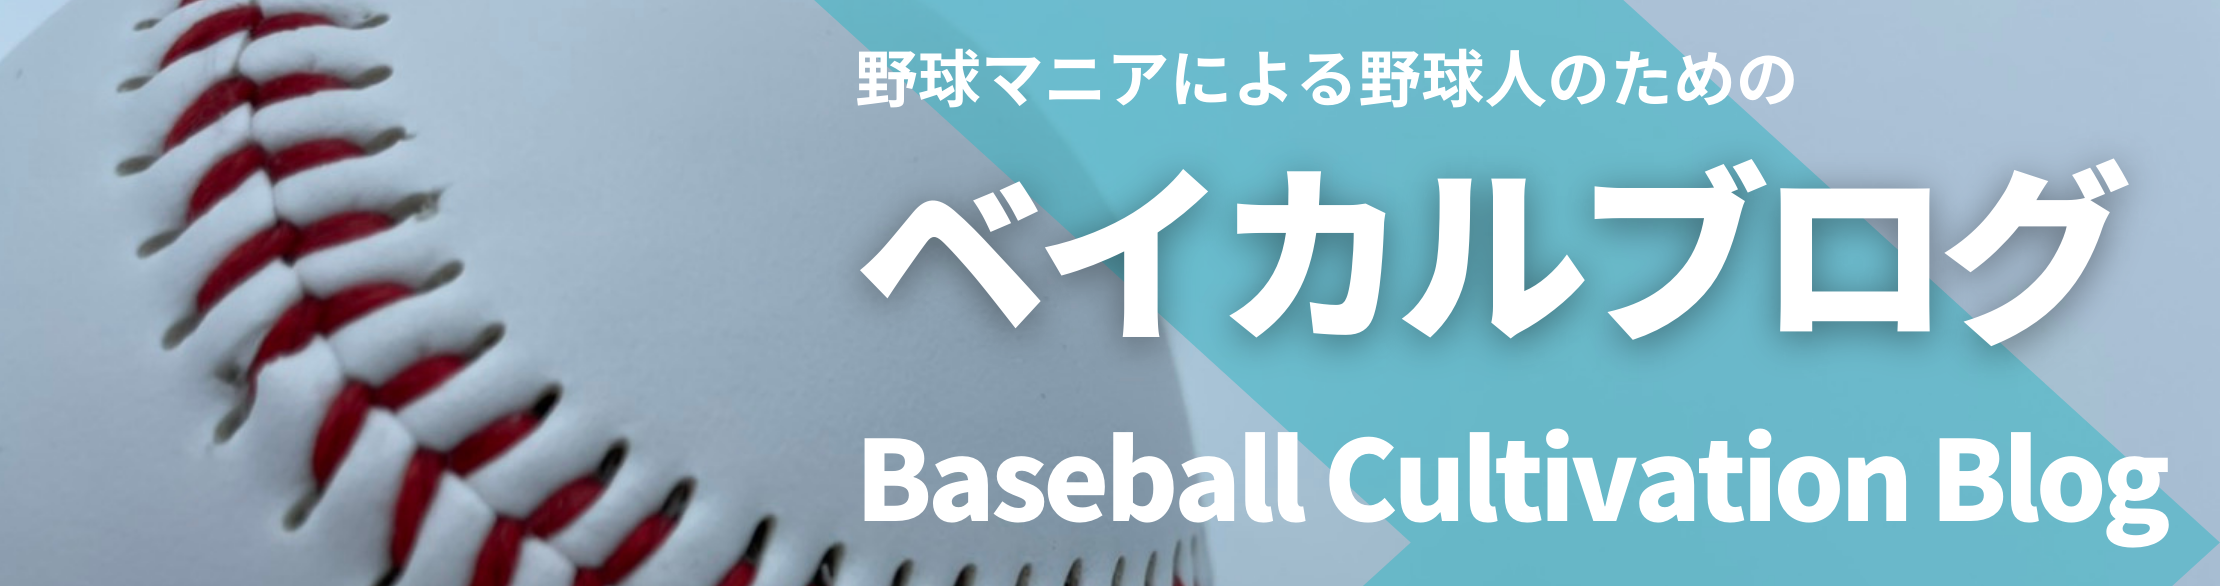 ジャベリックスロー〜ピッチャーおすすめ練習！！〜 | ベイカルブログ Baseball Cultivation